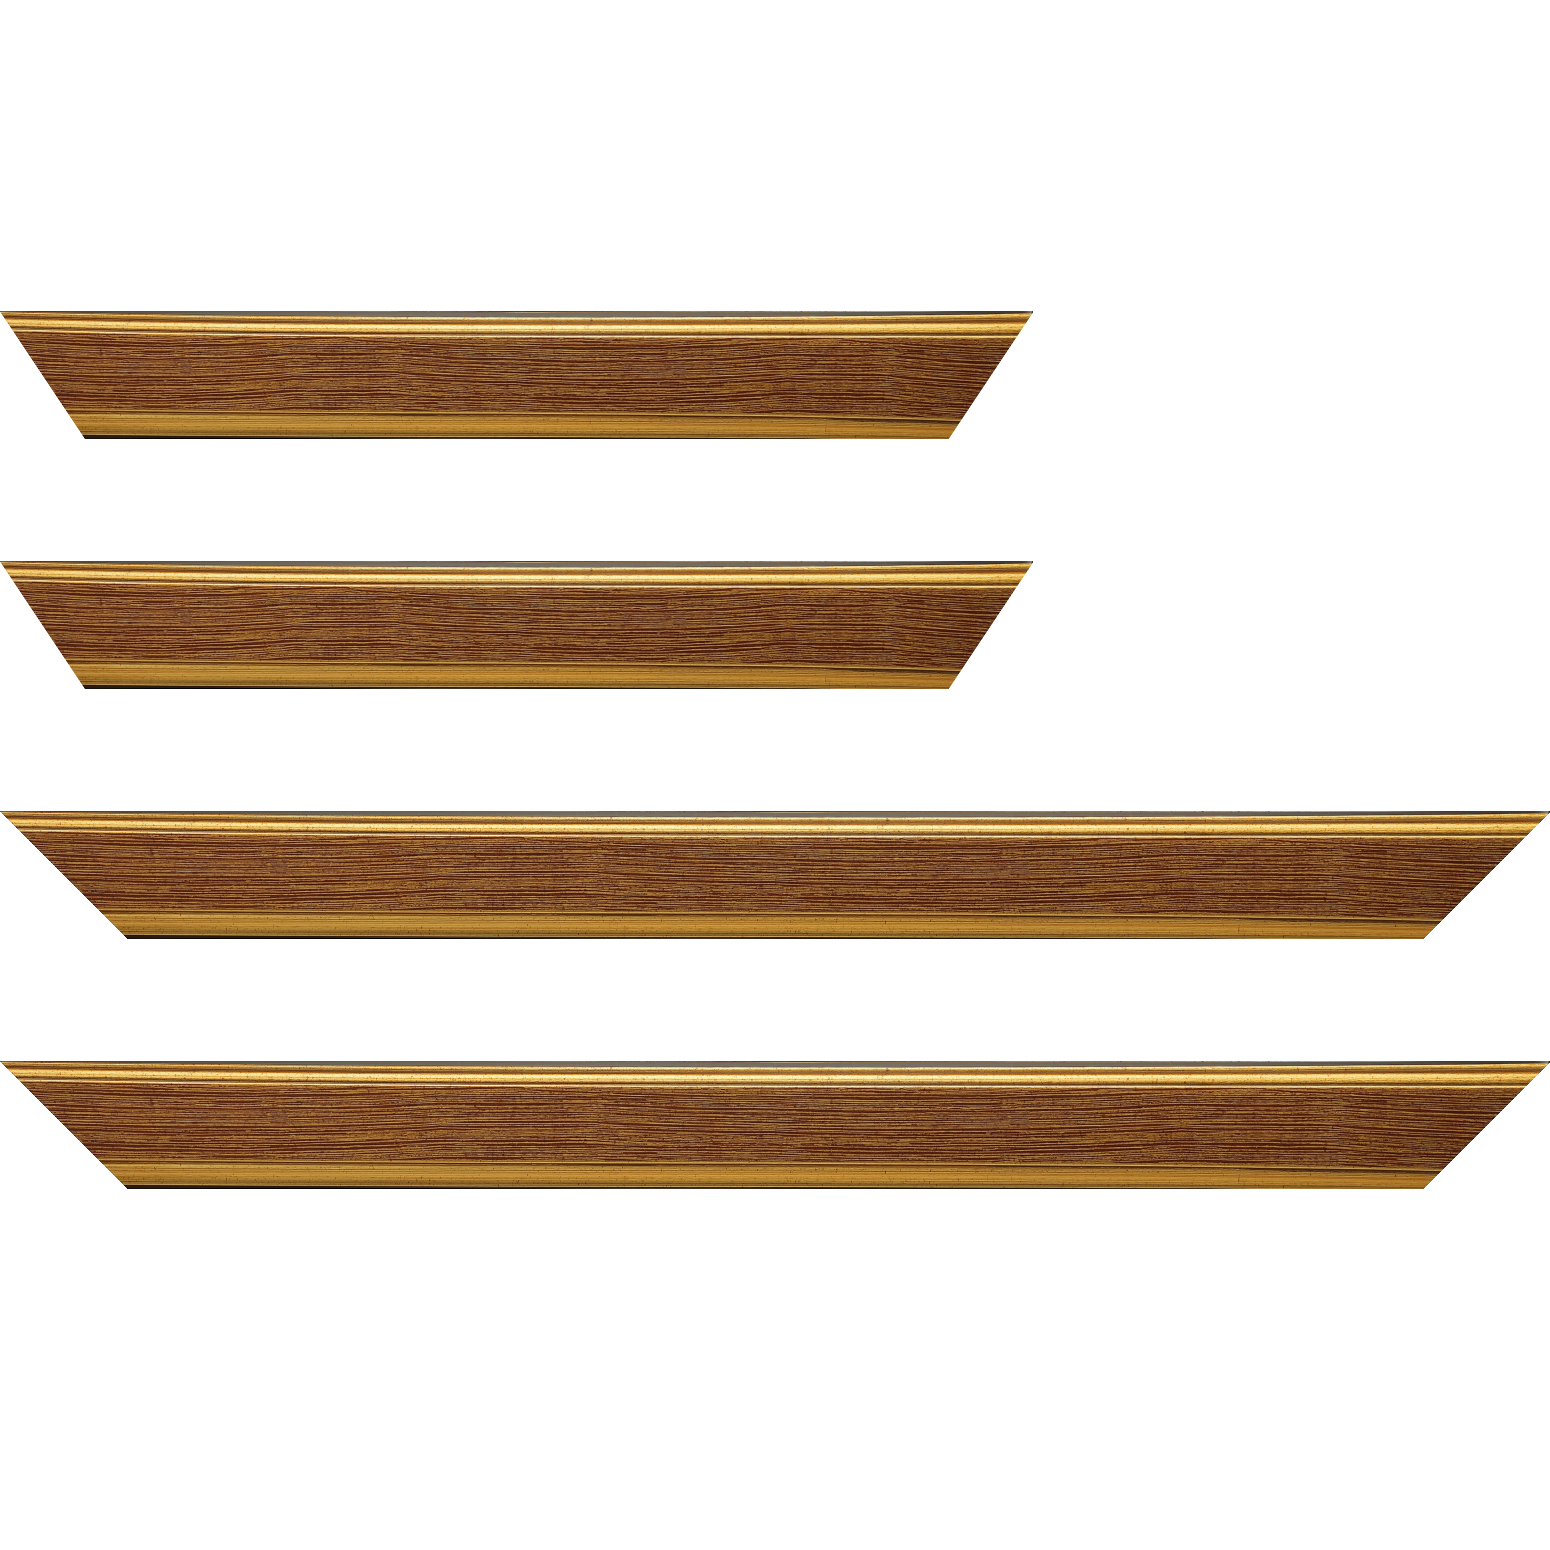 Baguette bois profil plat largeur 3.5cm couleur or fond bordeaux filet or - 70x100